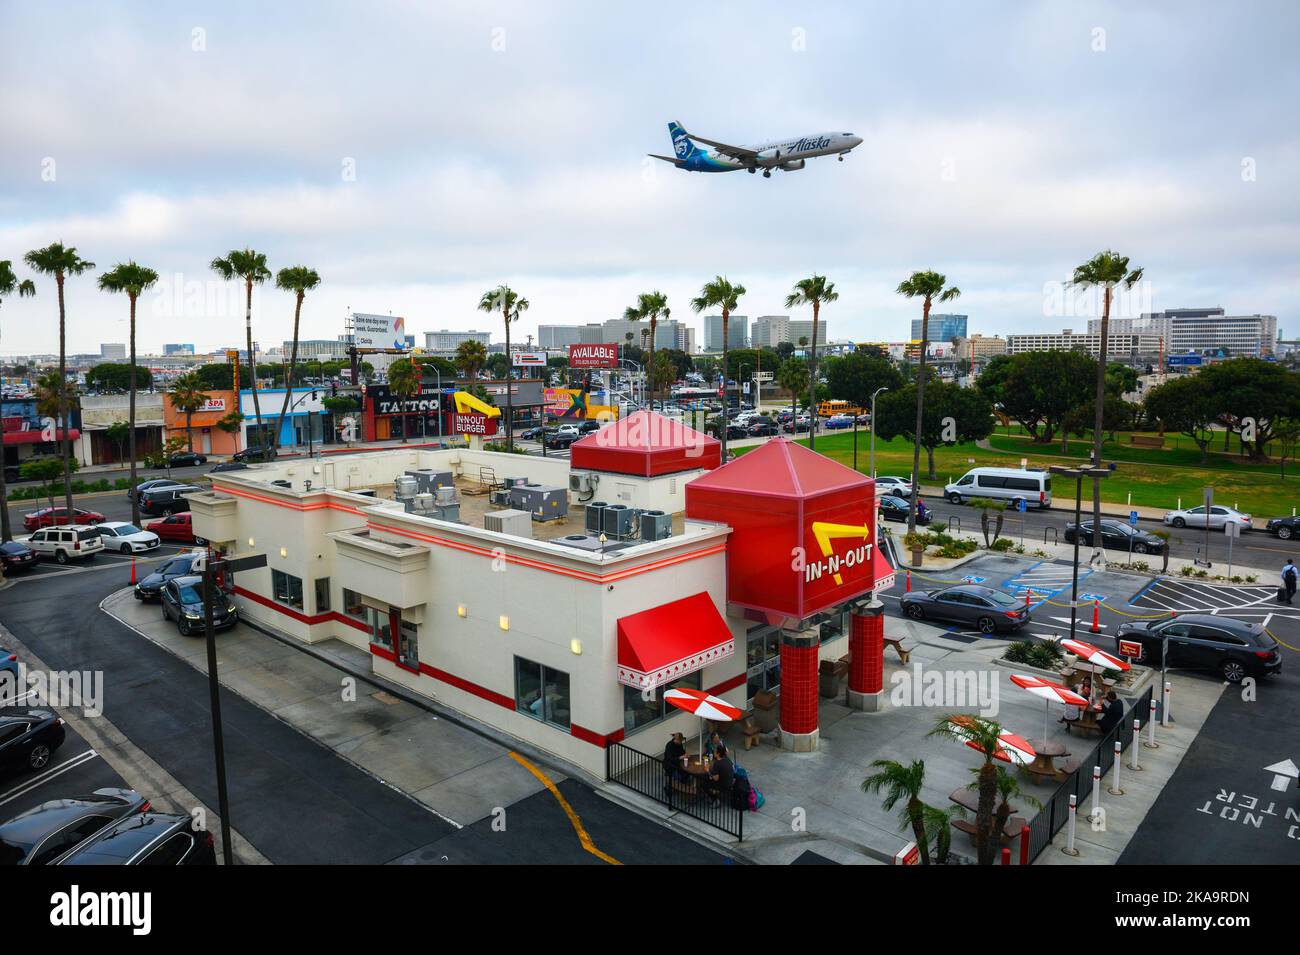 L'avion d'Alaska Airlines survole le restaurant In-N-Out Burger lors de l'atterrissage à l'aéroport international de Los Angeles LAX Banque D'Images